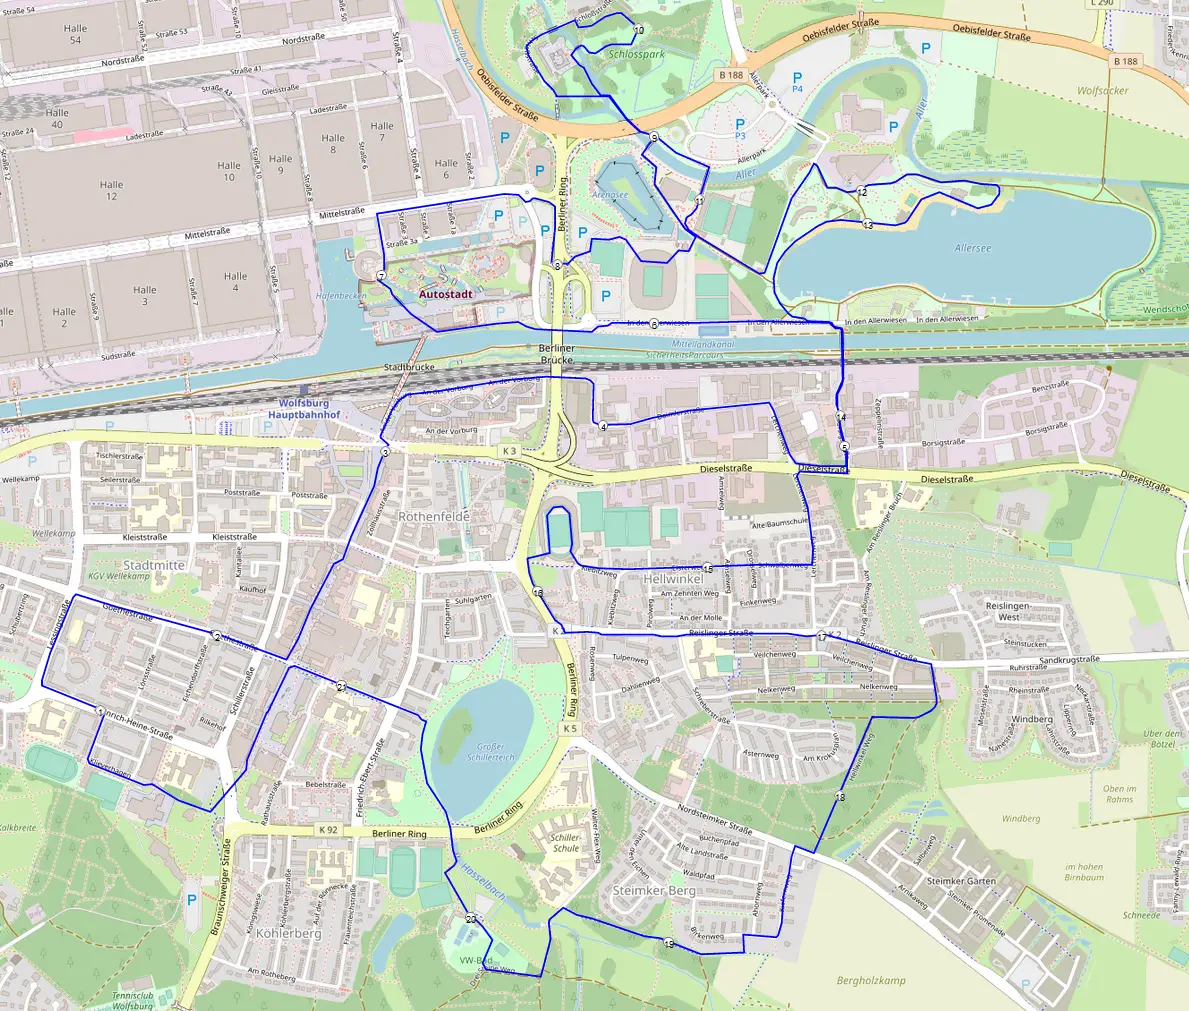 Strecke Wolfsburg Marathon